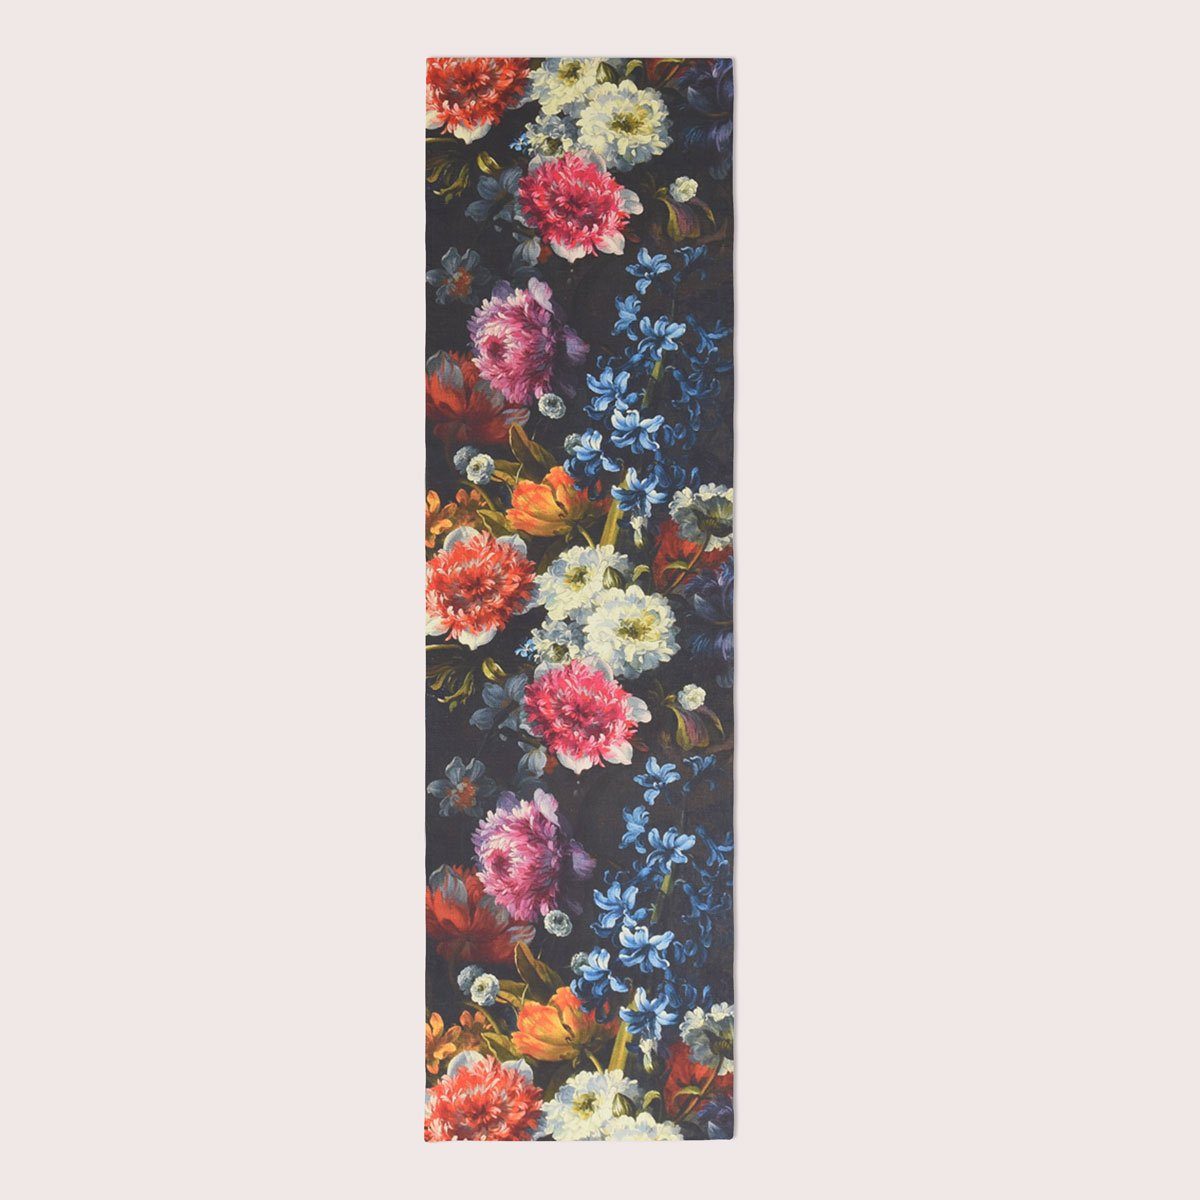 SCHÖNER LEBEN. Tischläufer 40x160cm, bunt SCHÖNER LEBEN. dunkel Tischläufer Blumen Digitaldruck Digitaldruck